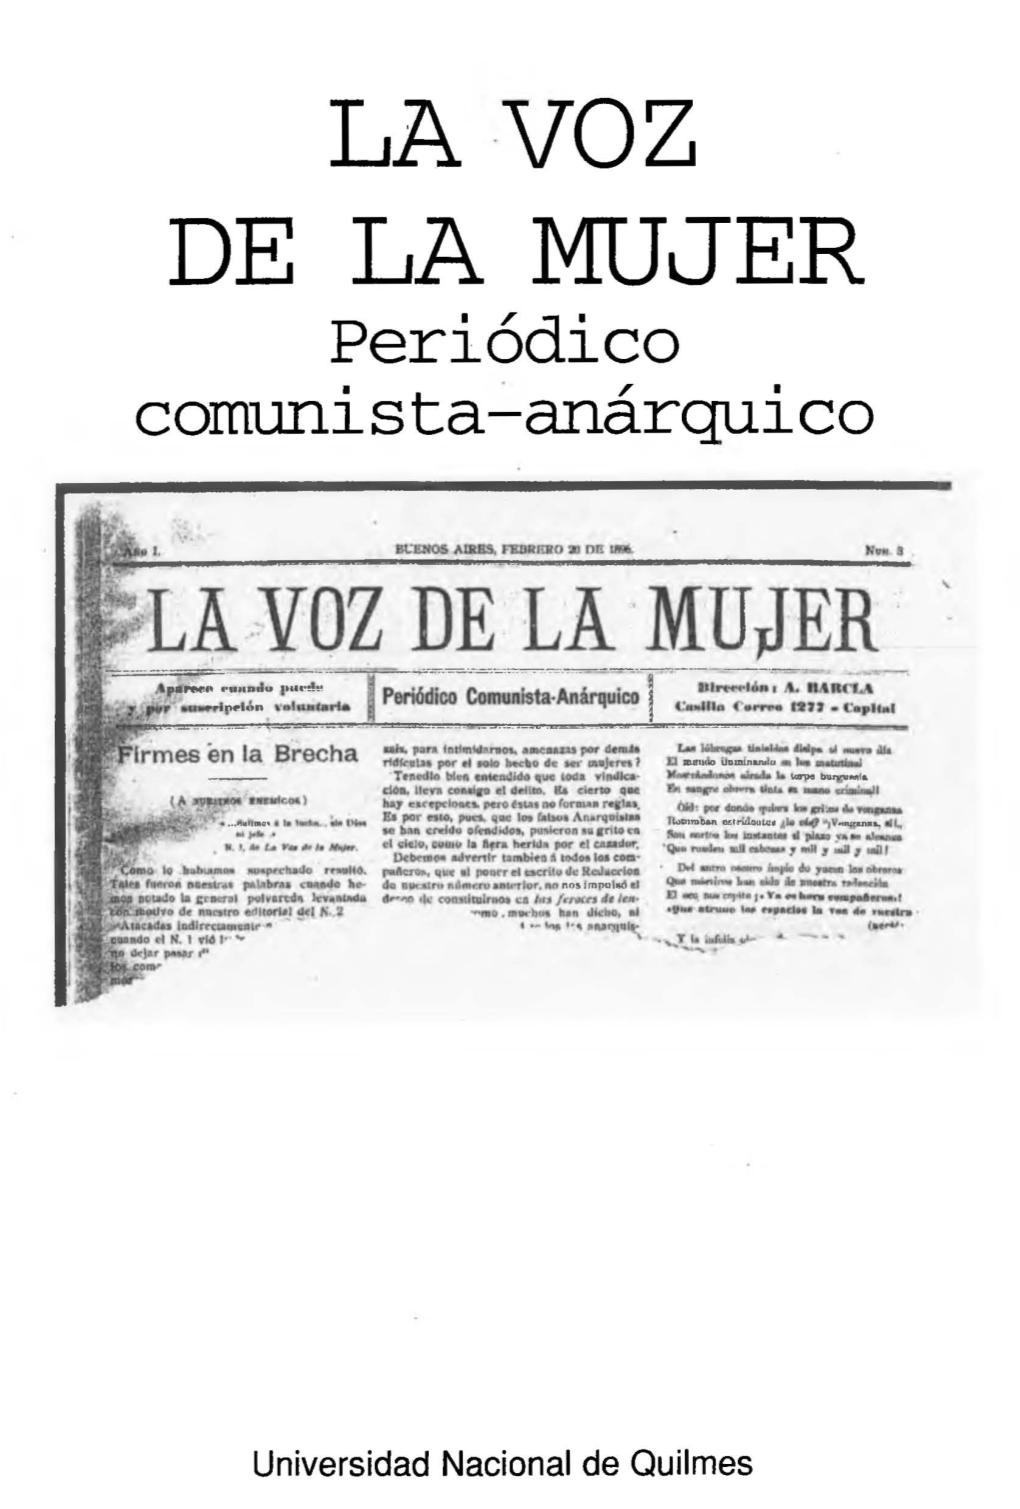 La Voz De La Mujer. Periodico Comunista-Anarquico